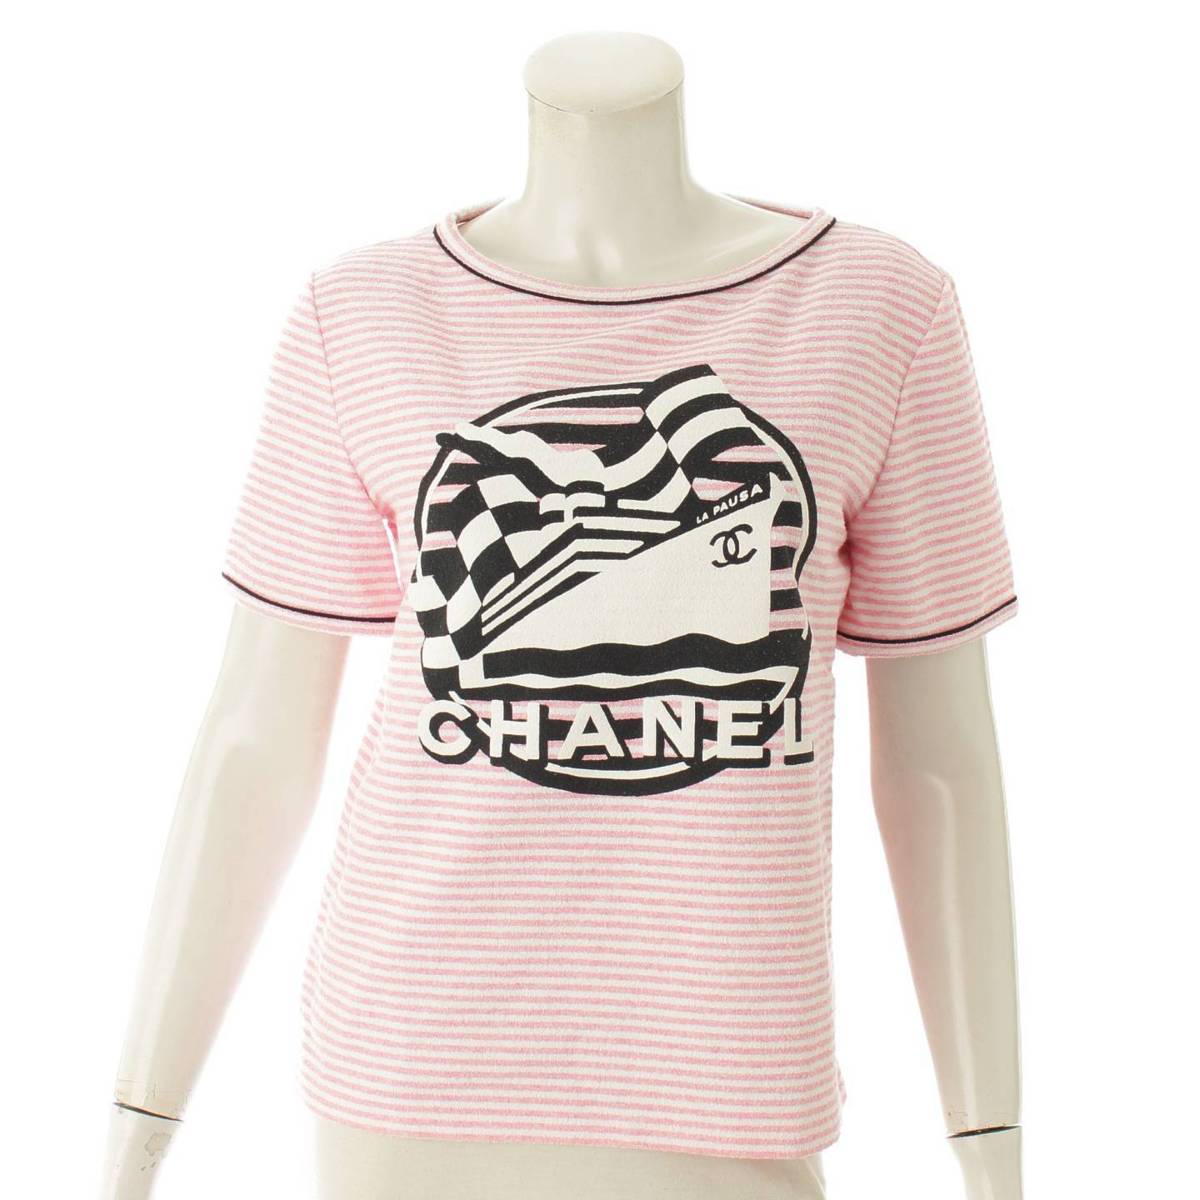 シャネル(Chanel) LA PAUSA 半袖 ボーダーTシャツ トップス カットソー P60455 ピンク 34